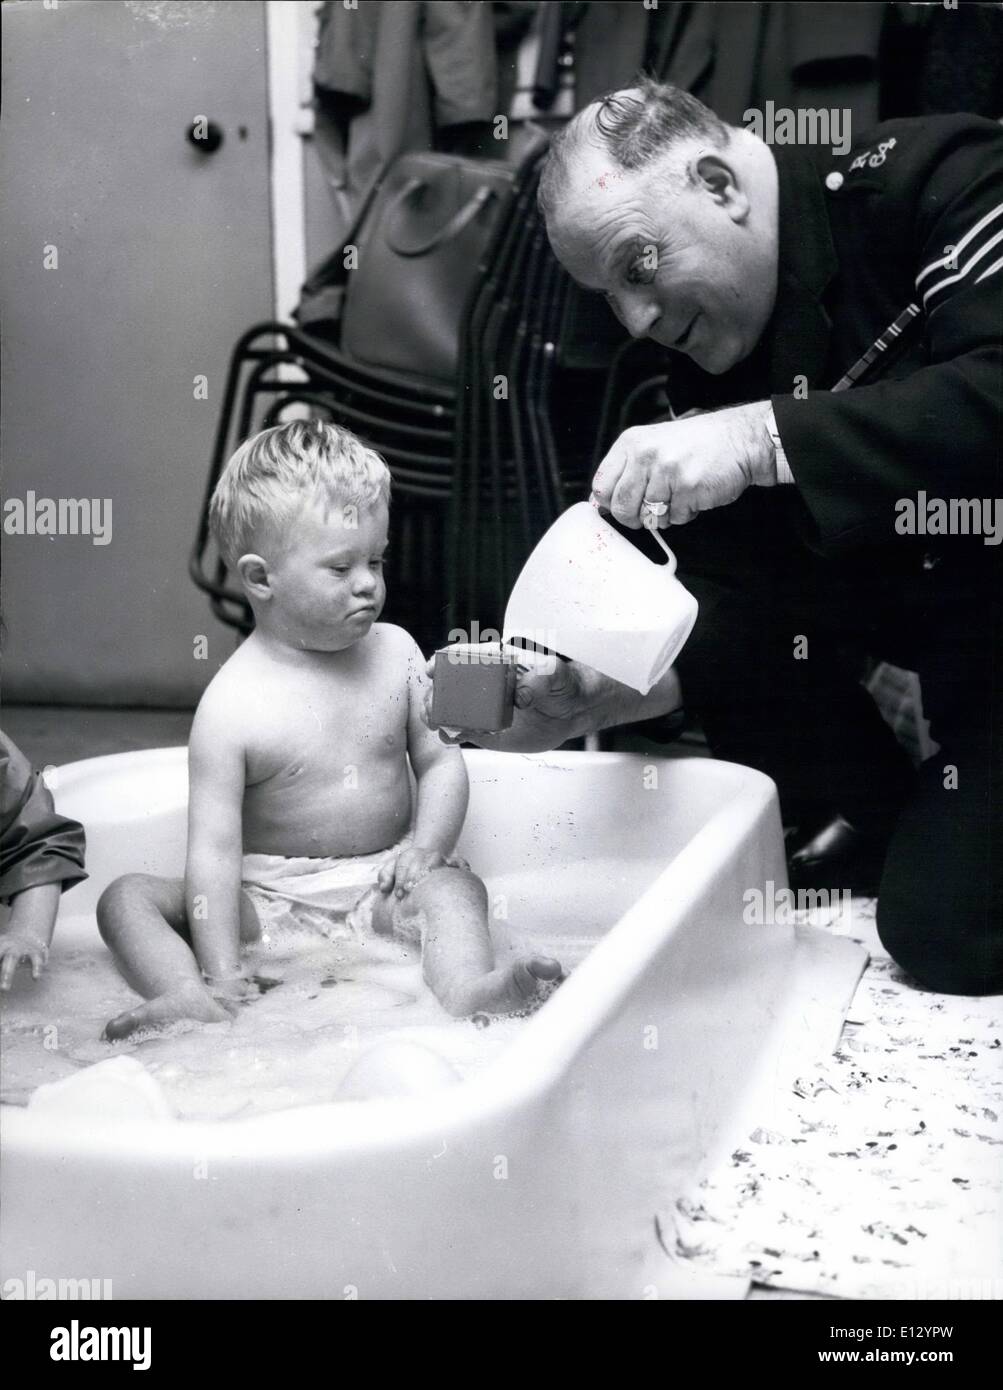 Febbraio 26, 2012 - di solito un poliziotto ha il compito di estrarre alcune uno fuori dall'acqua ma sul suo battito compassionevole sergente Stibbards Foto Stock